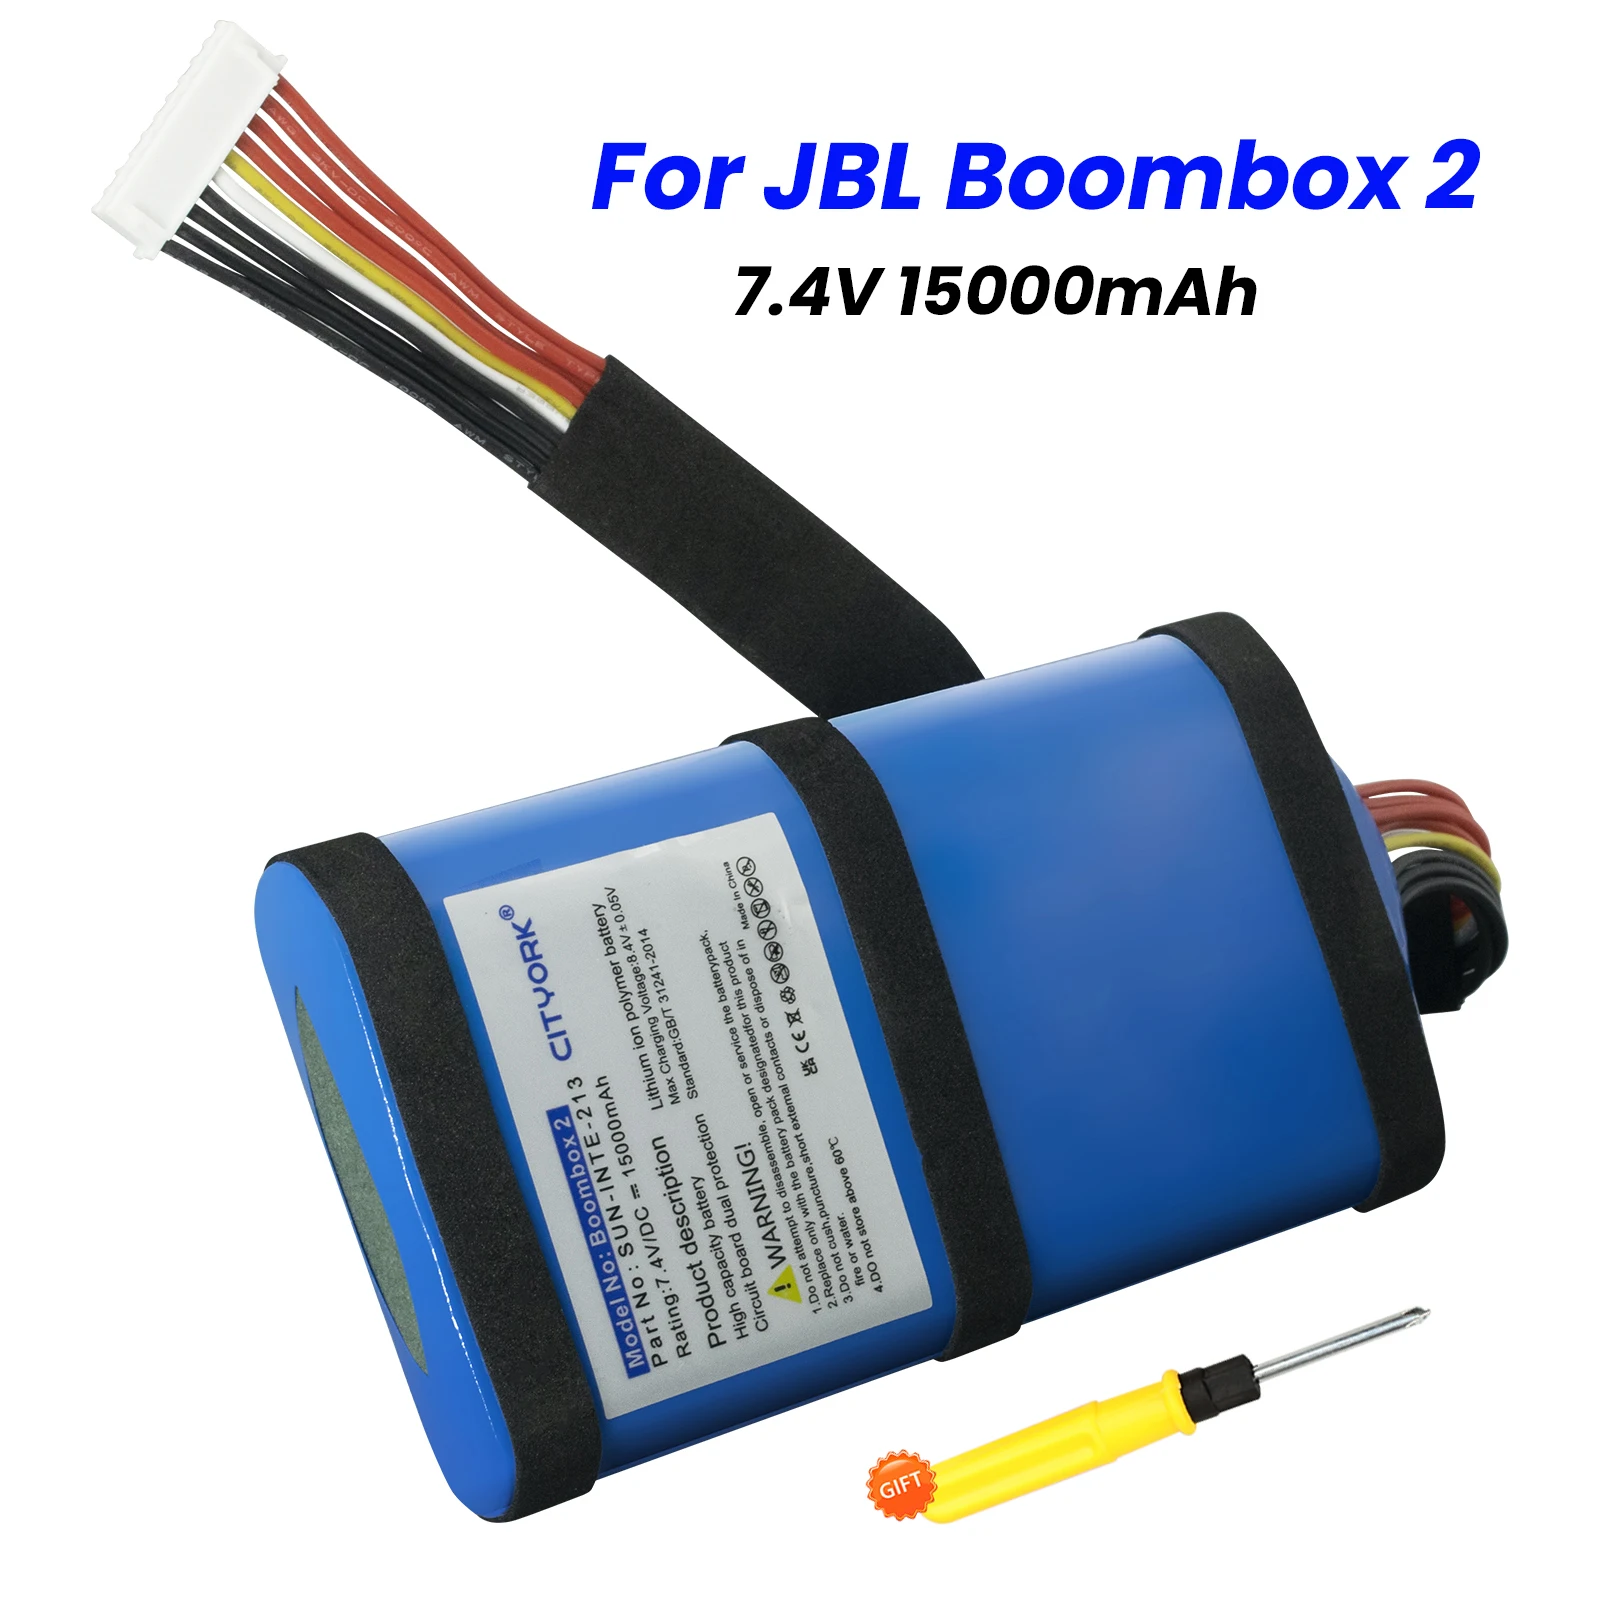 100% מקוריים 15000mAh 7.4 V רמקול סוללת ליתיום נטענת עבור JBL טייפ 2 Boombox2 השמש-INTE-21 סוללות